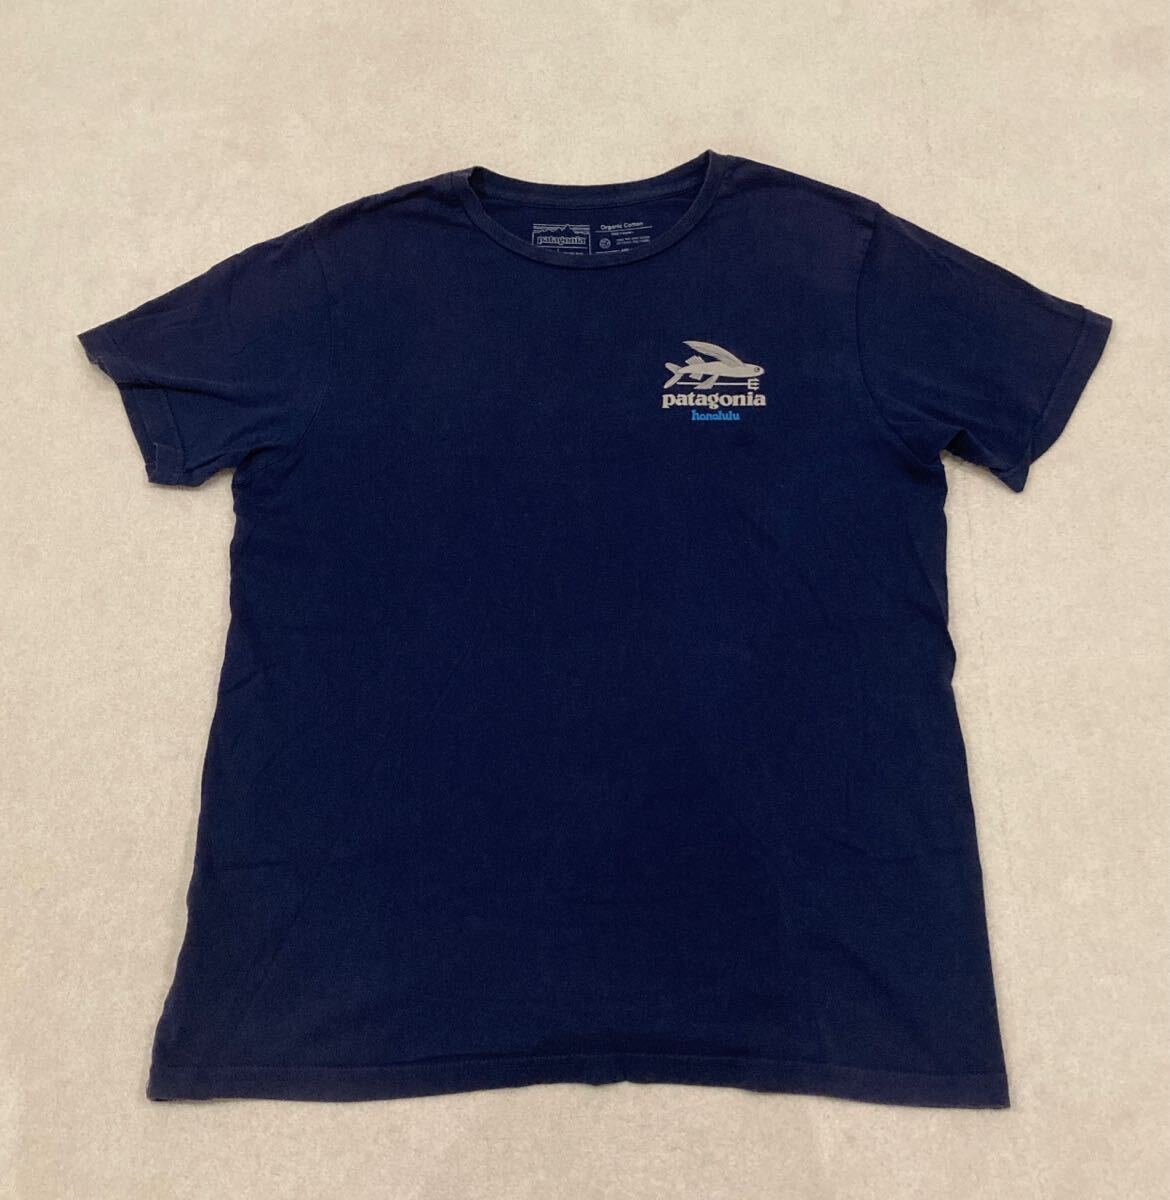 【ハワイ限定】patagonia パタゴニアHONOLULU ホノルル Tシャツ Mサイズ ホワイト logo t-shirt tee hawaii の画像1